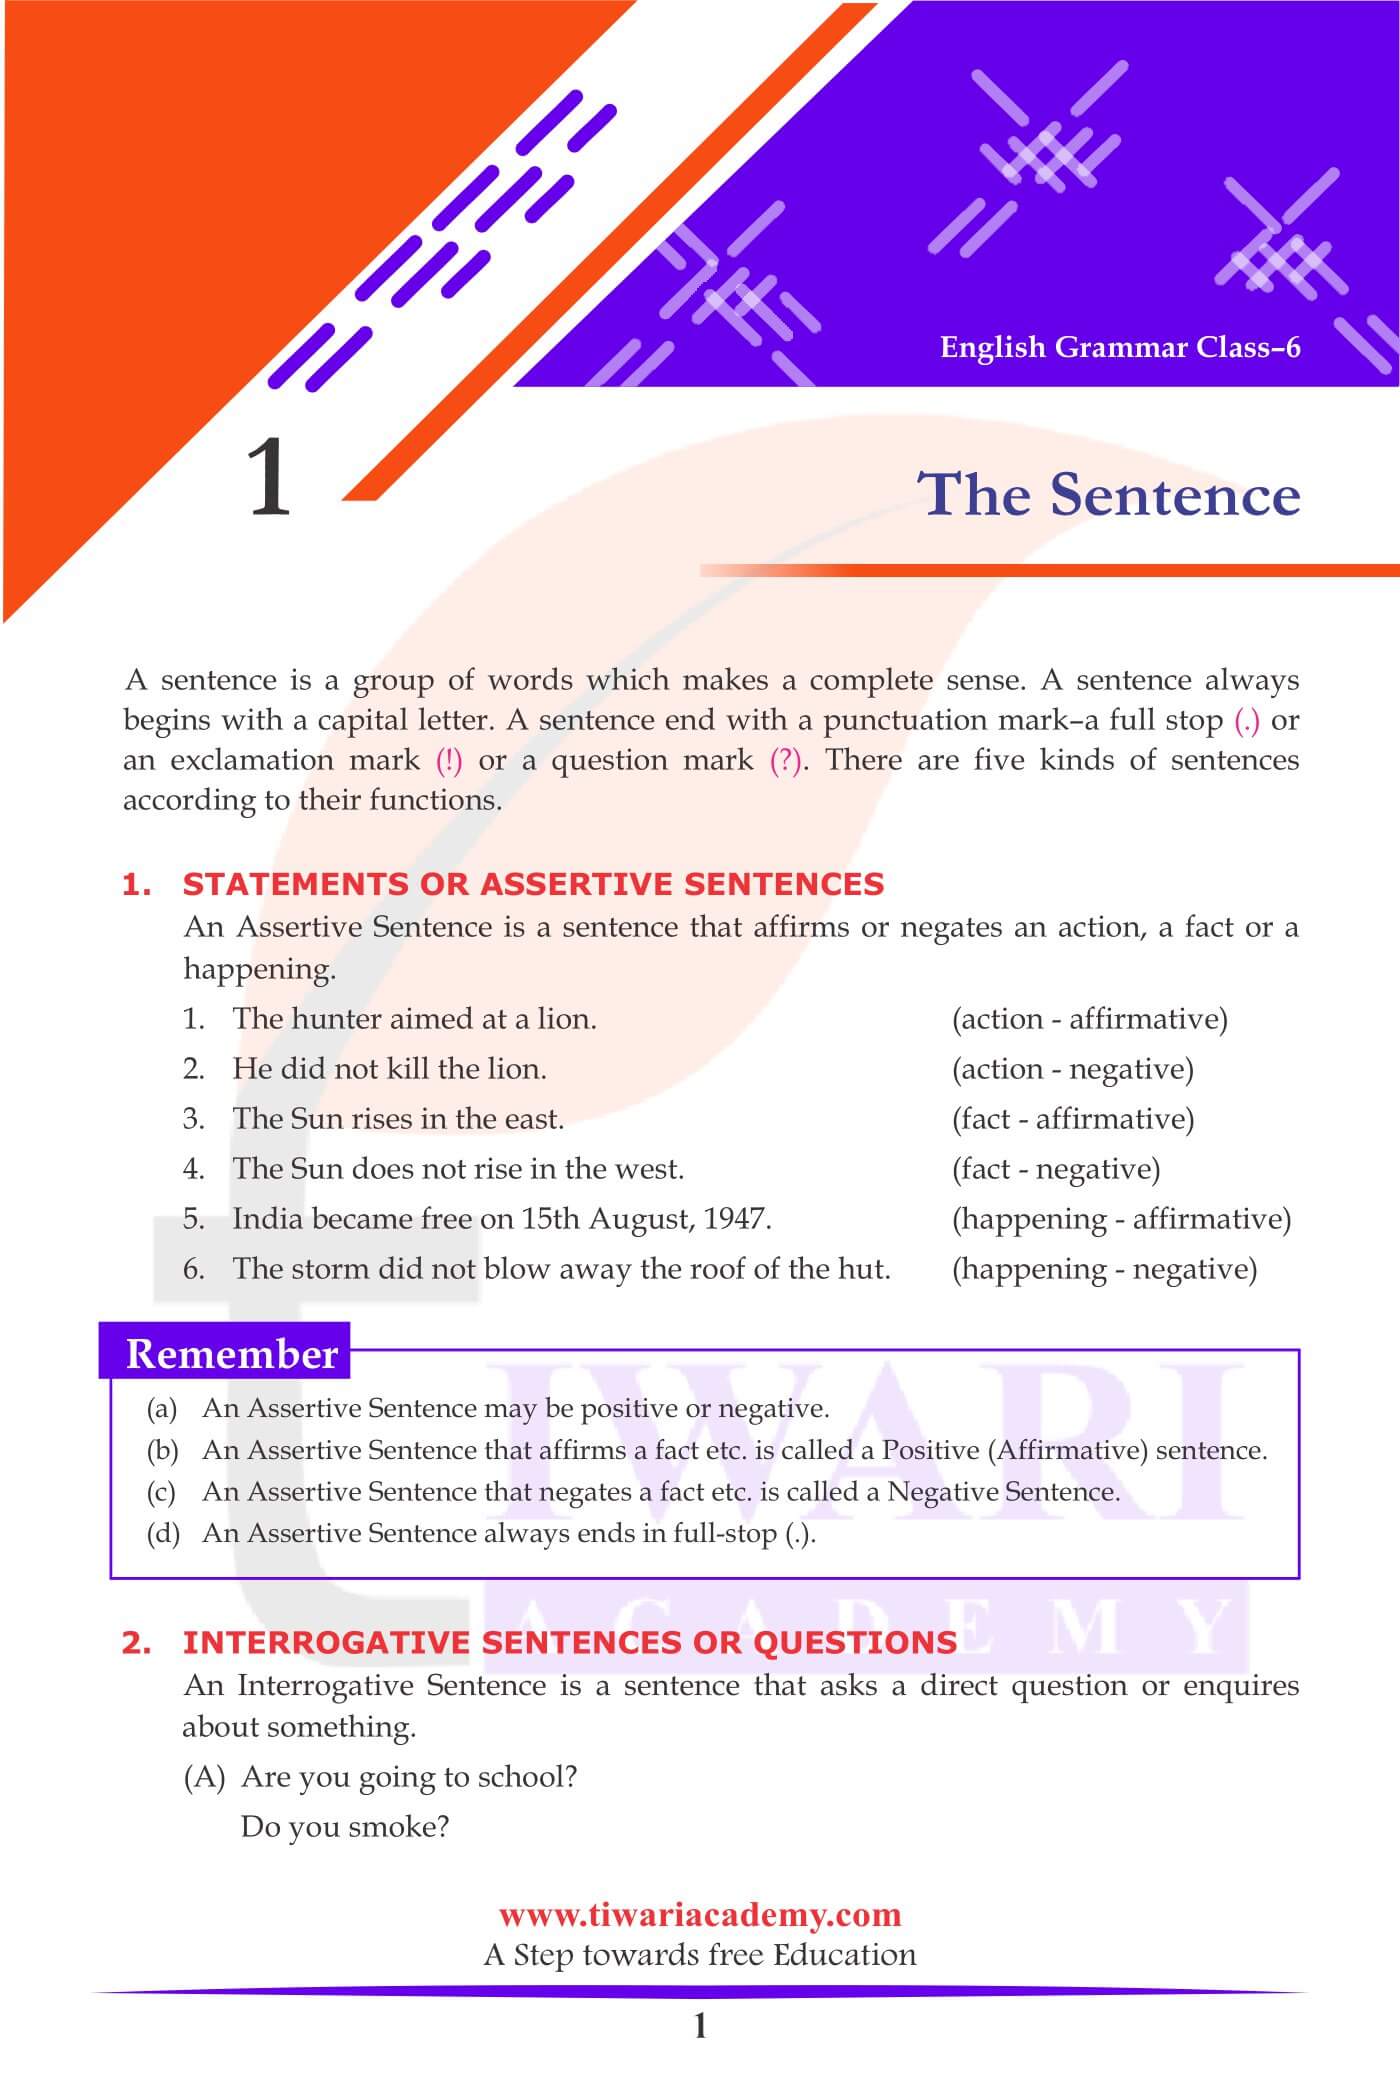 class-6-english-grammar-chapter-1-the-sentence